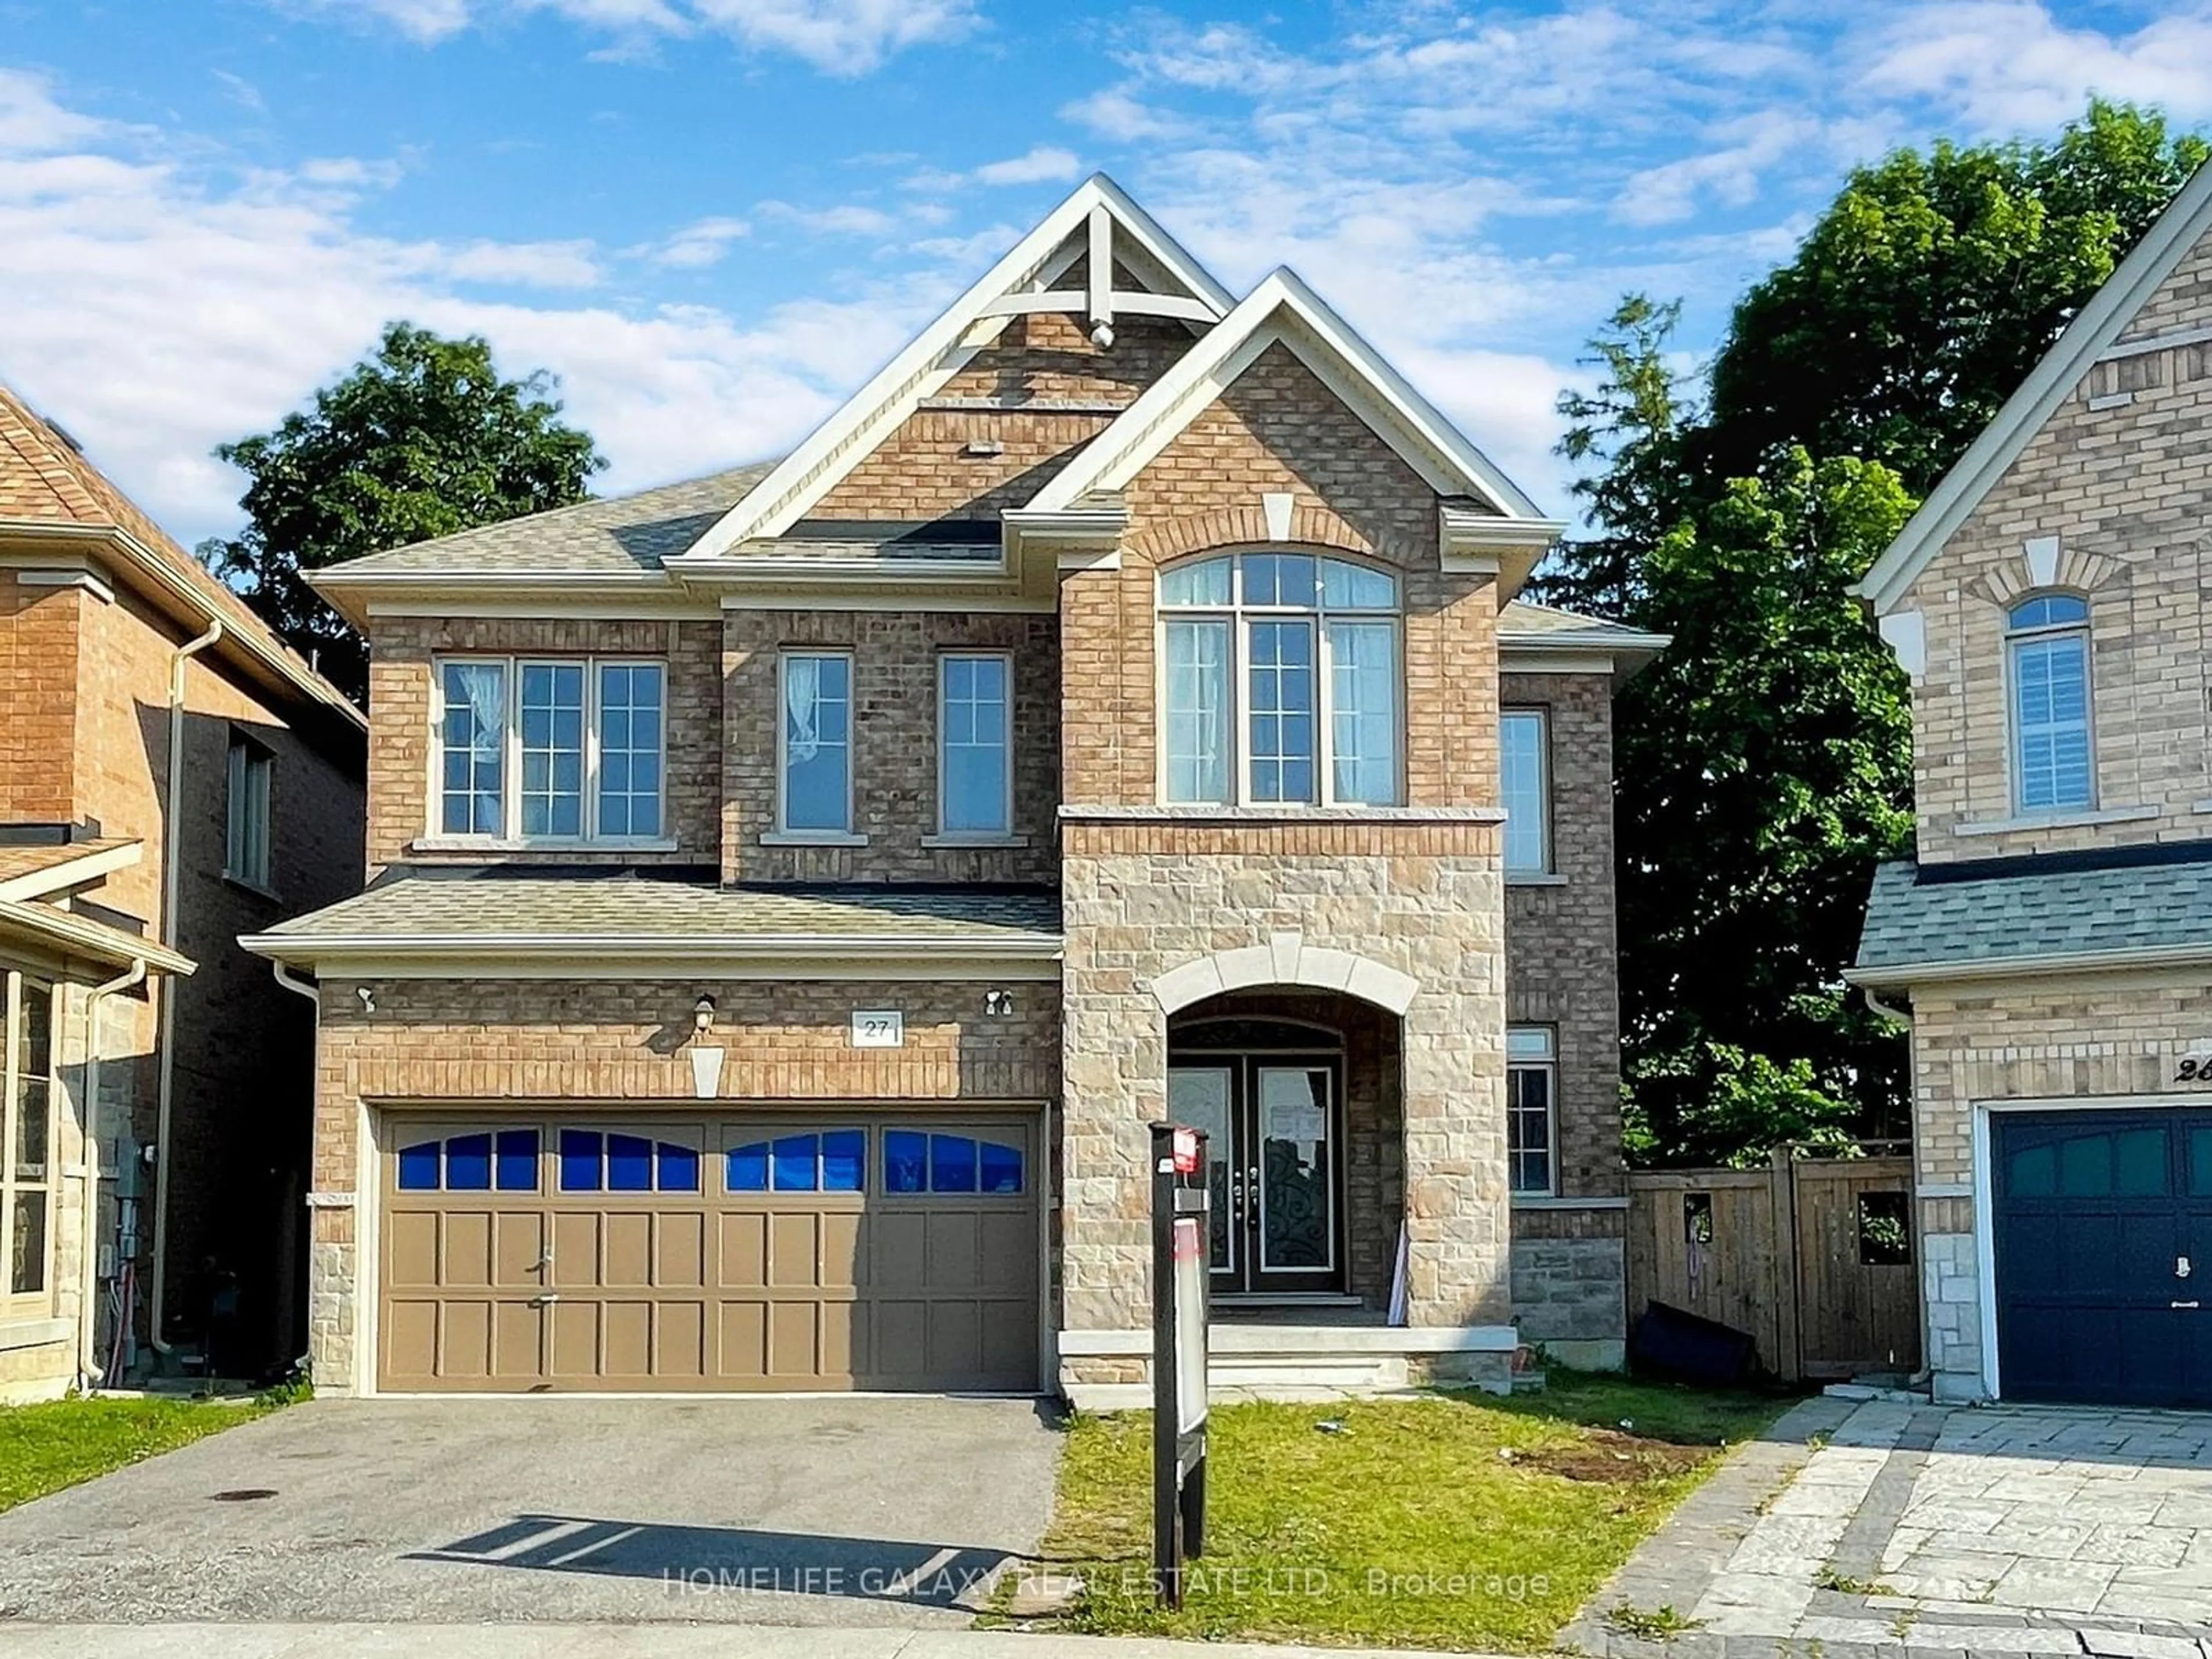 Home with brick exterior material for 27 Neelands Cres, Toronto Ontario M1E 0B6